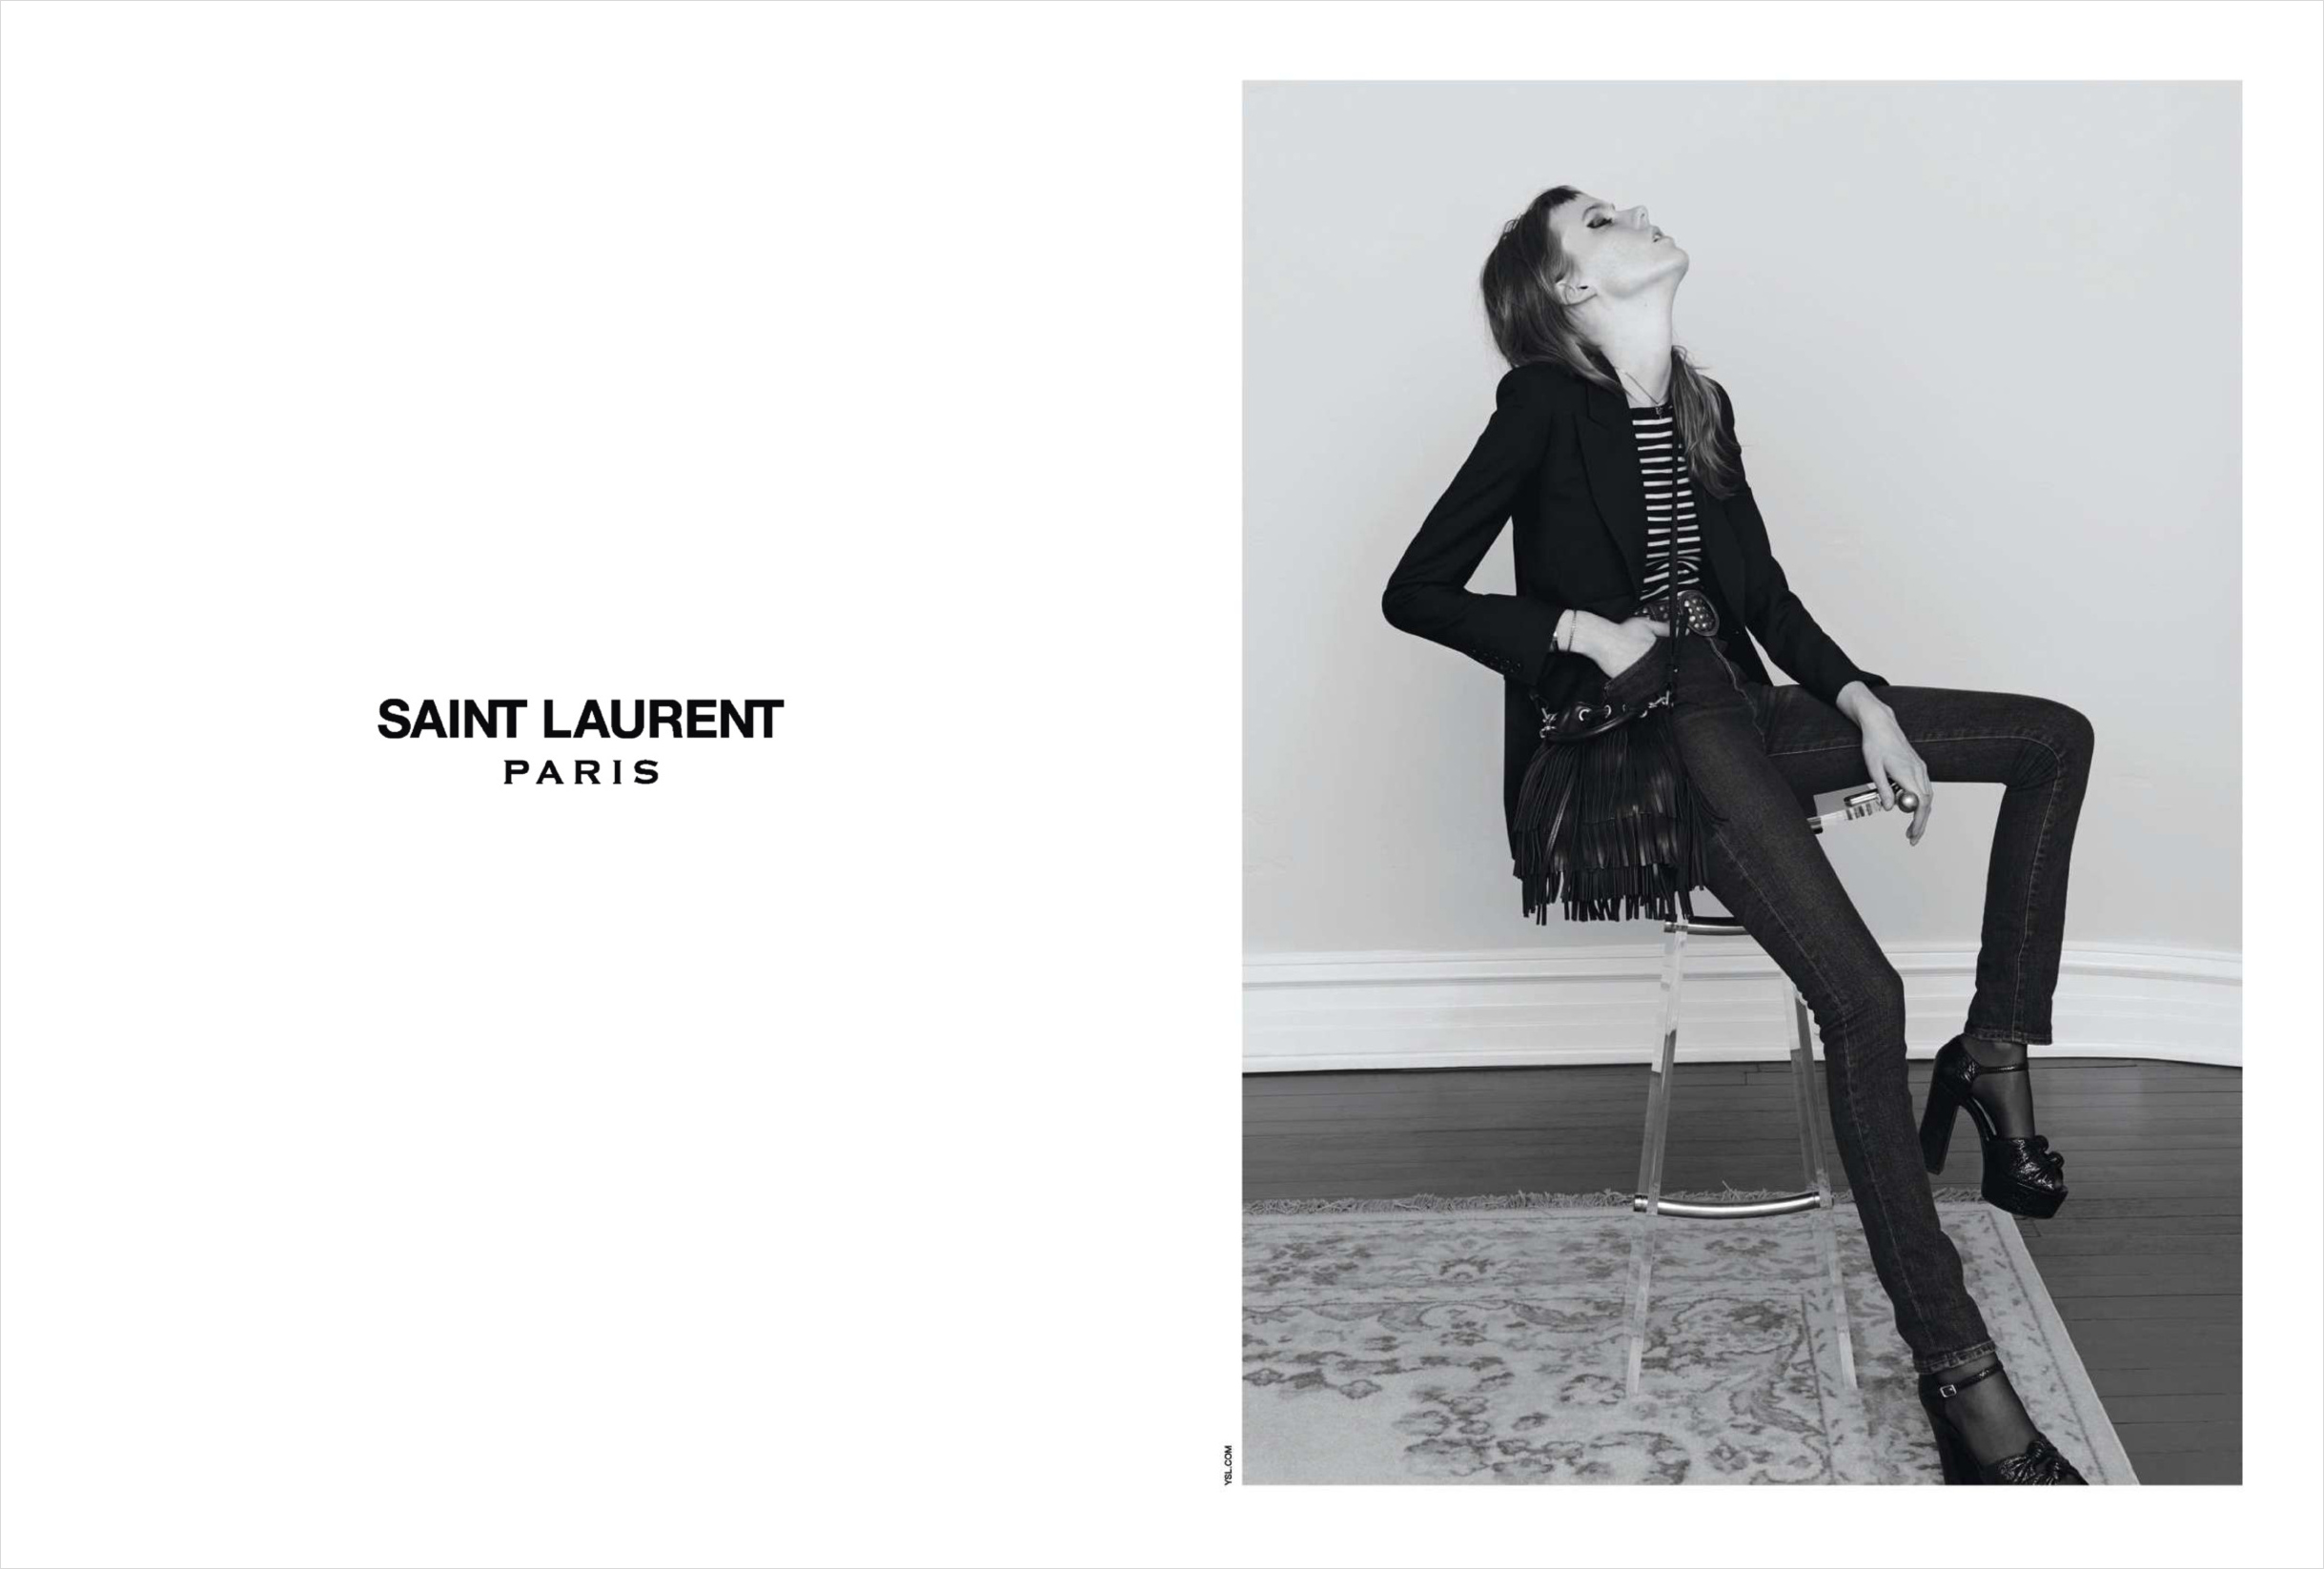 Yves Saint Laurent - The Revolutionary Brand